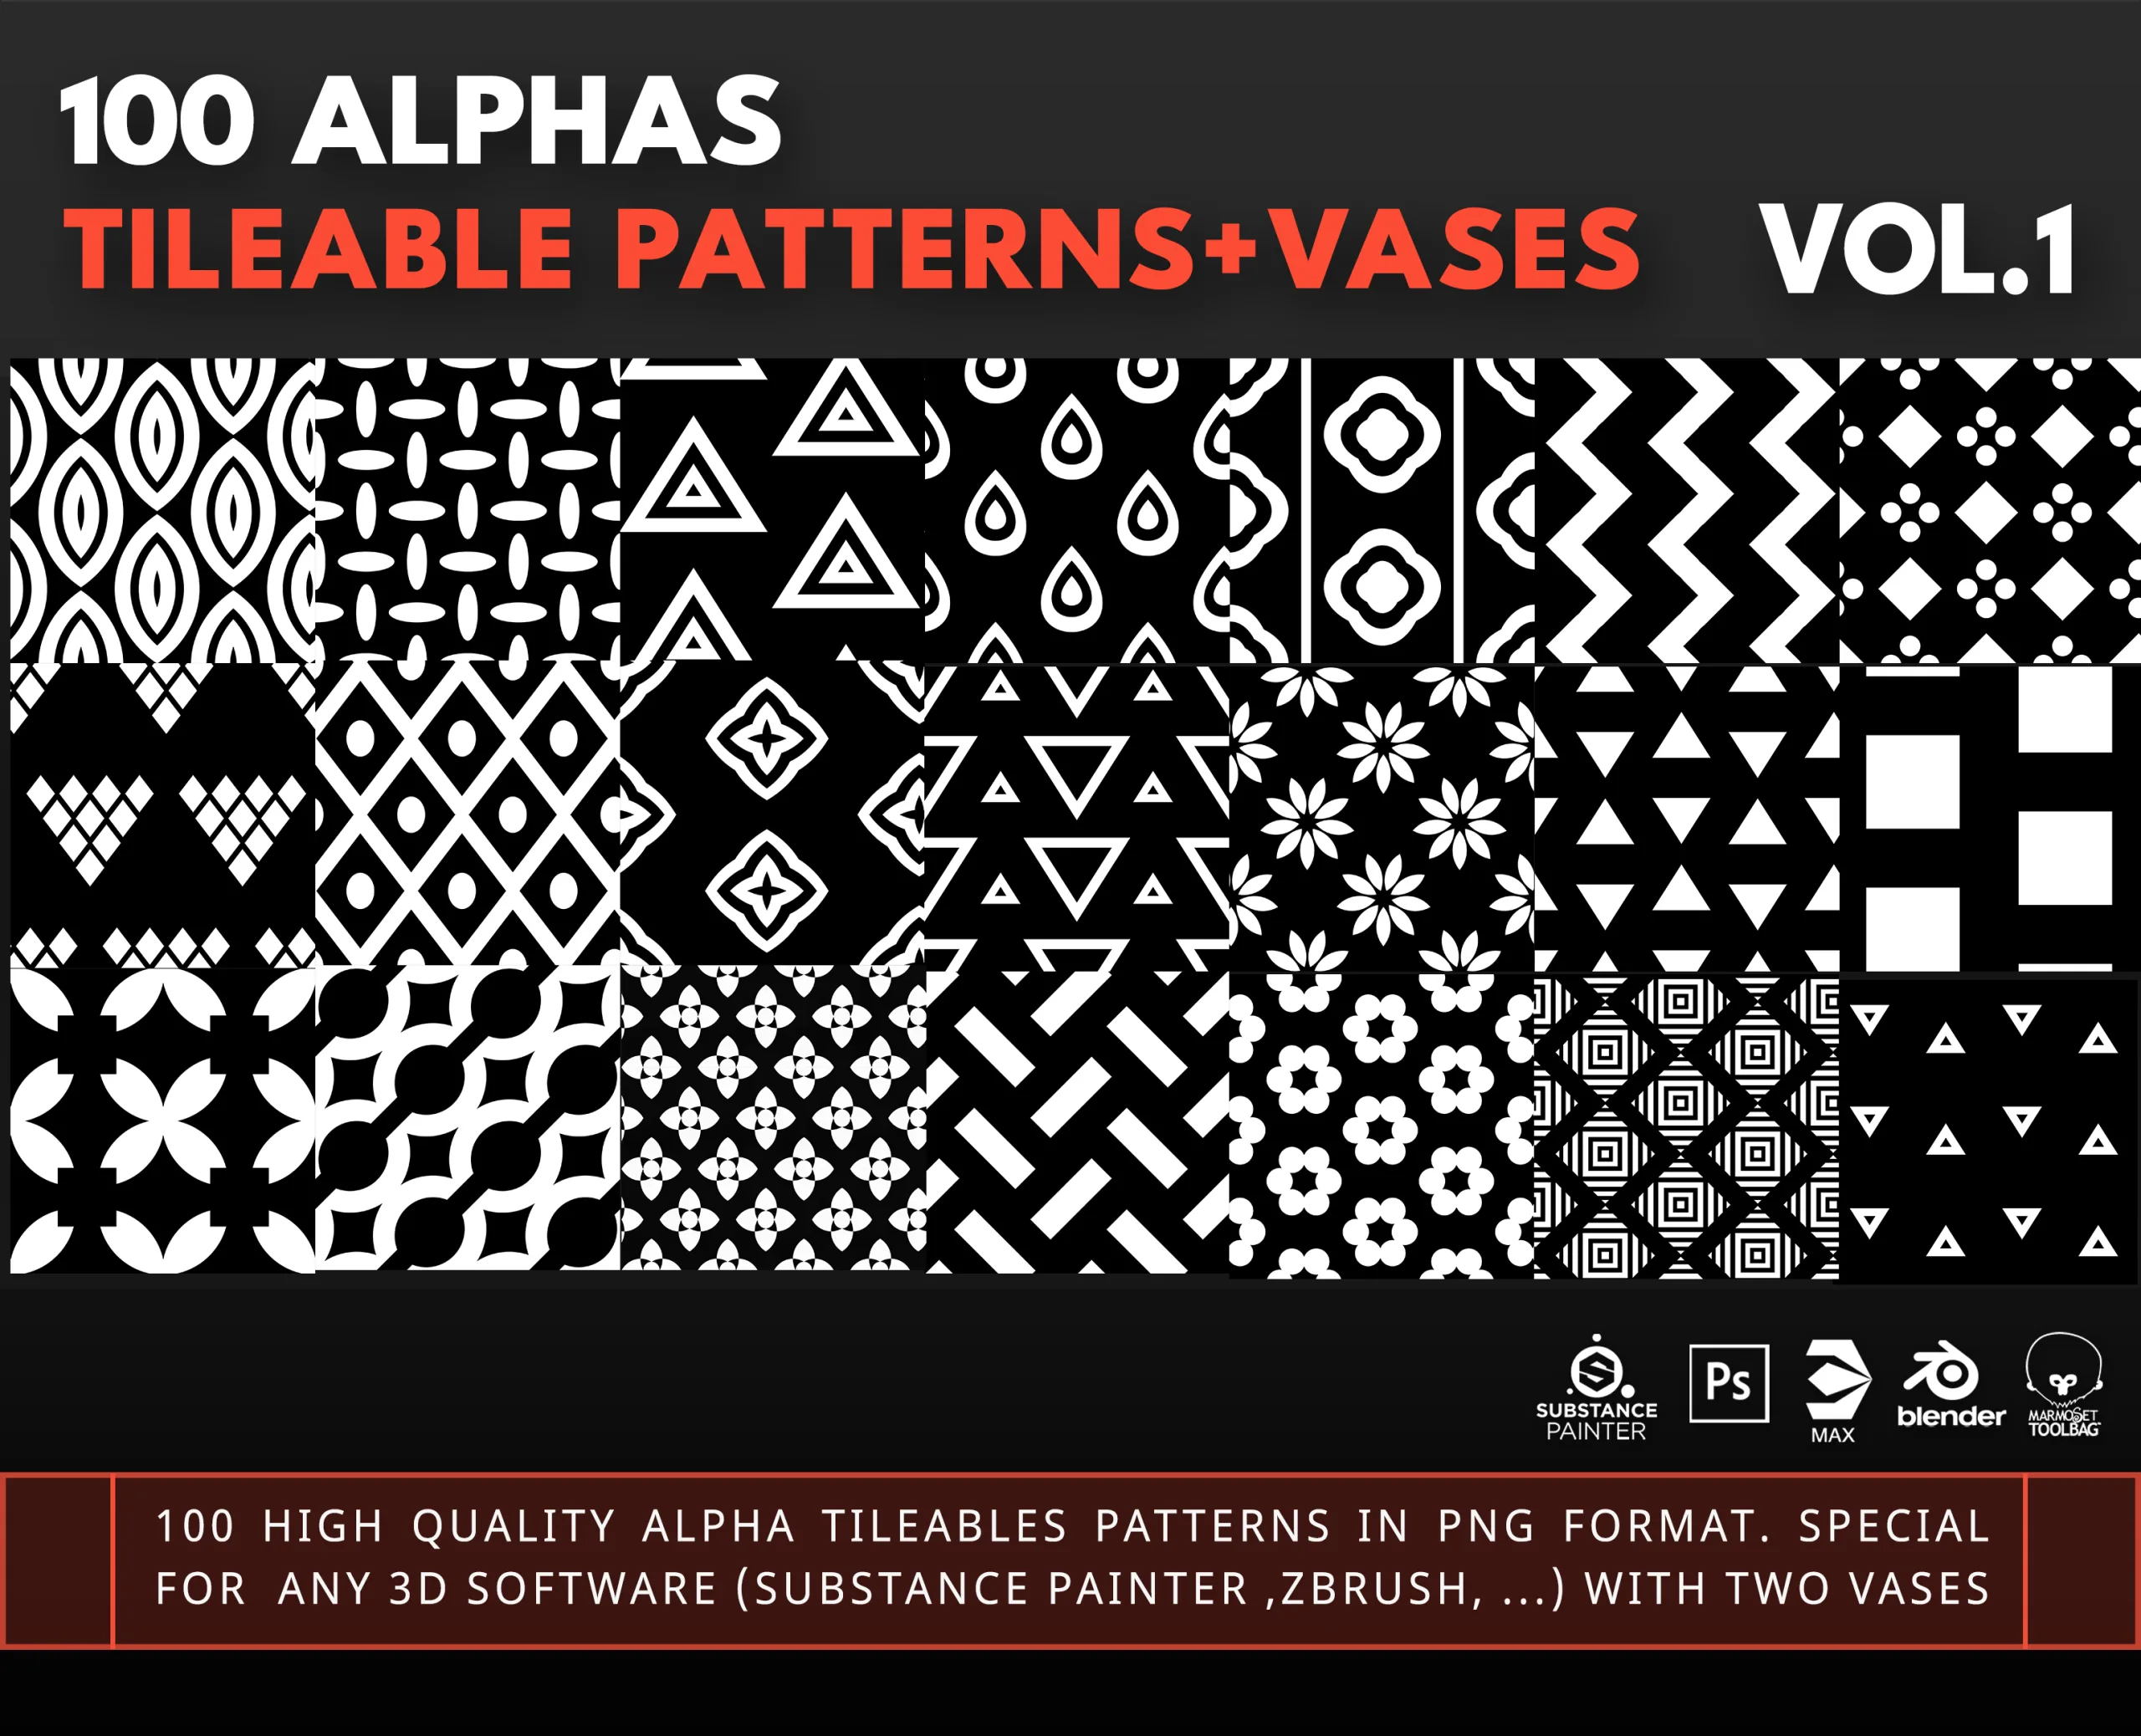 100 Alphas-Tileable pattern+vases